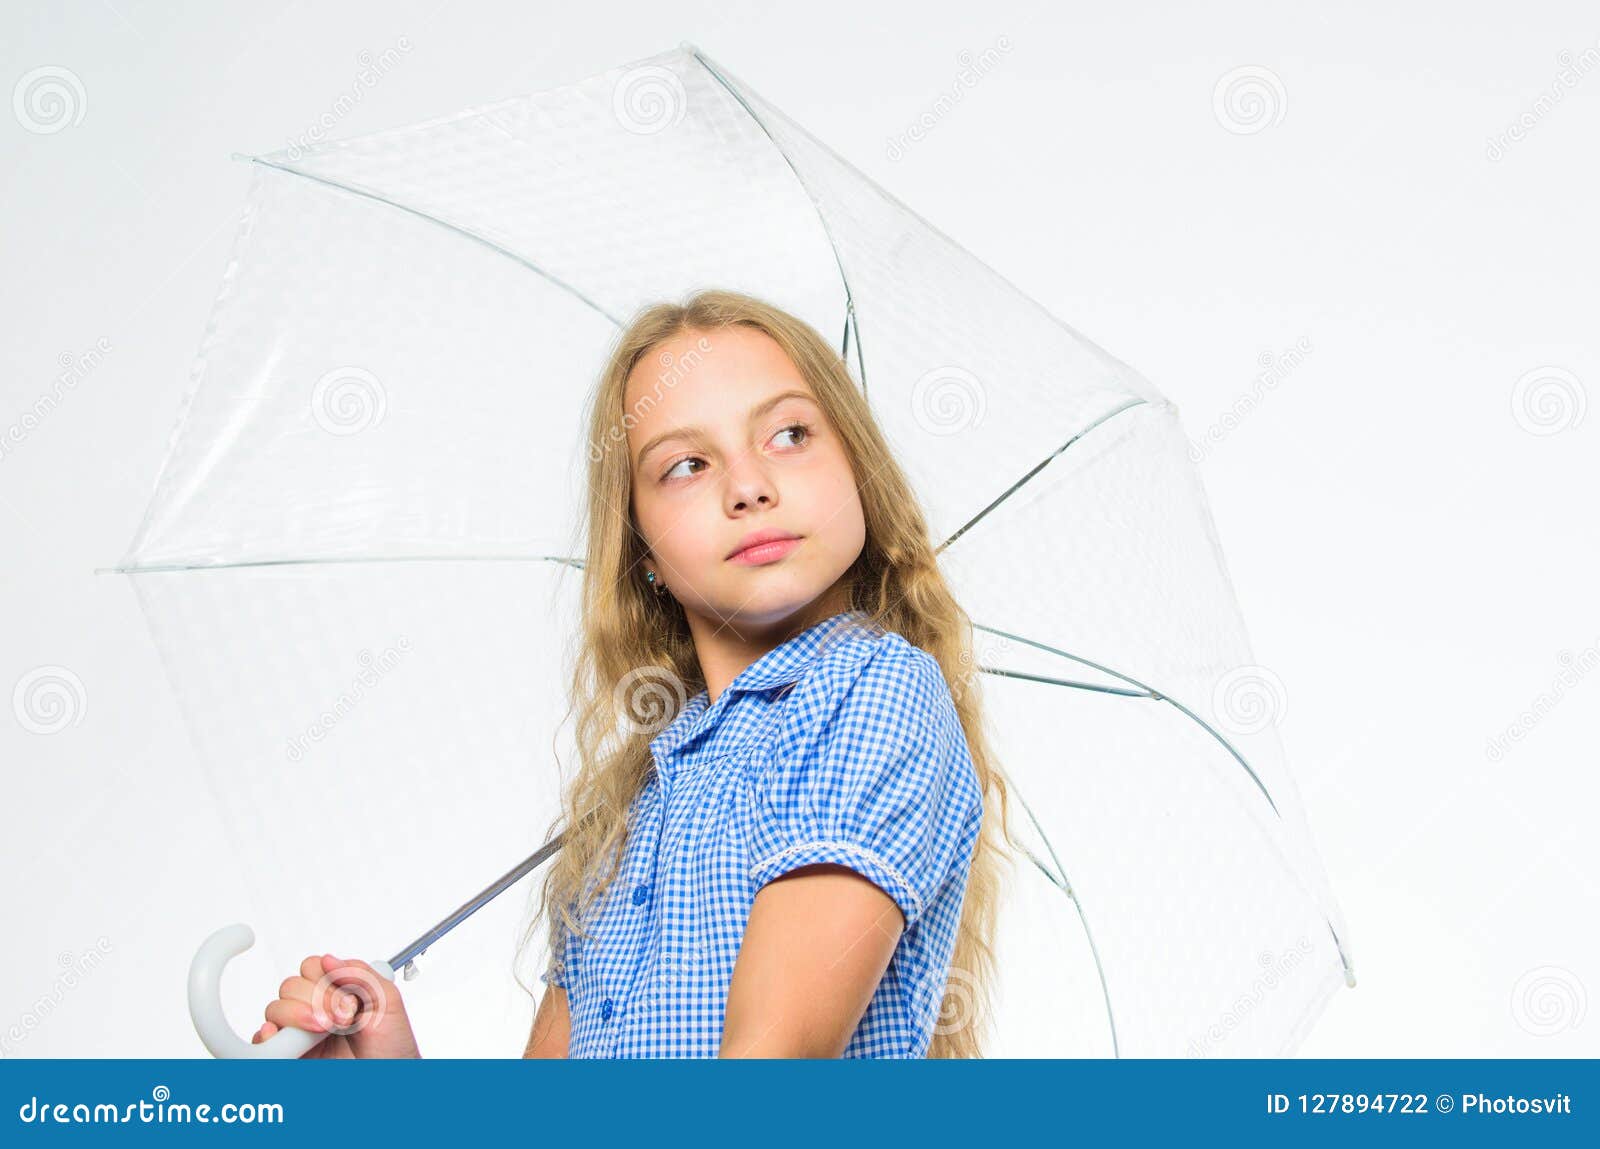 Transparent Umbrella - Transparent/white - Ladies